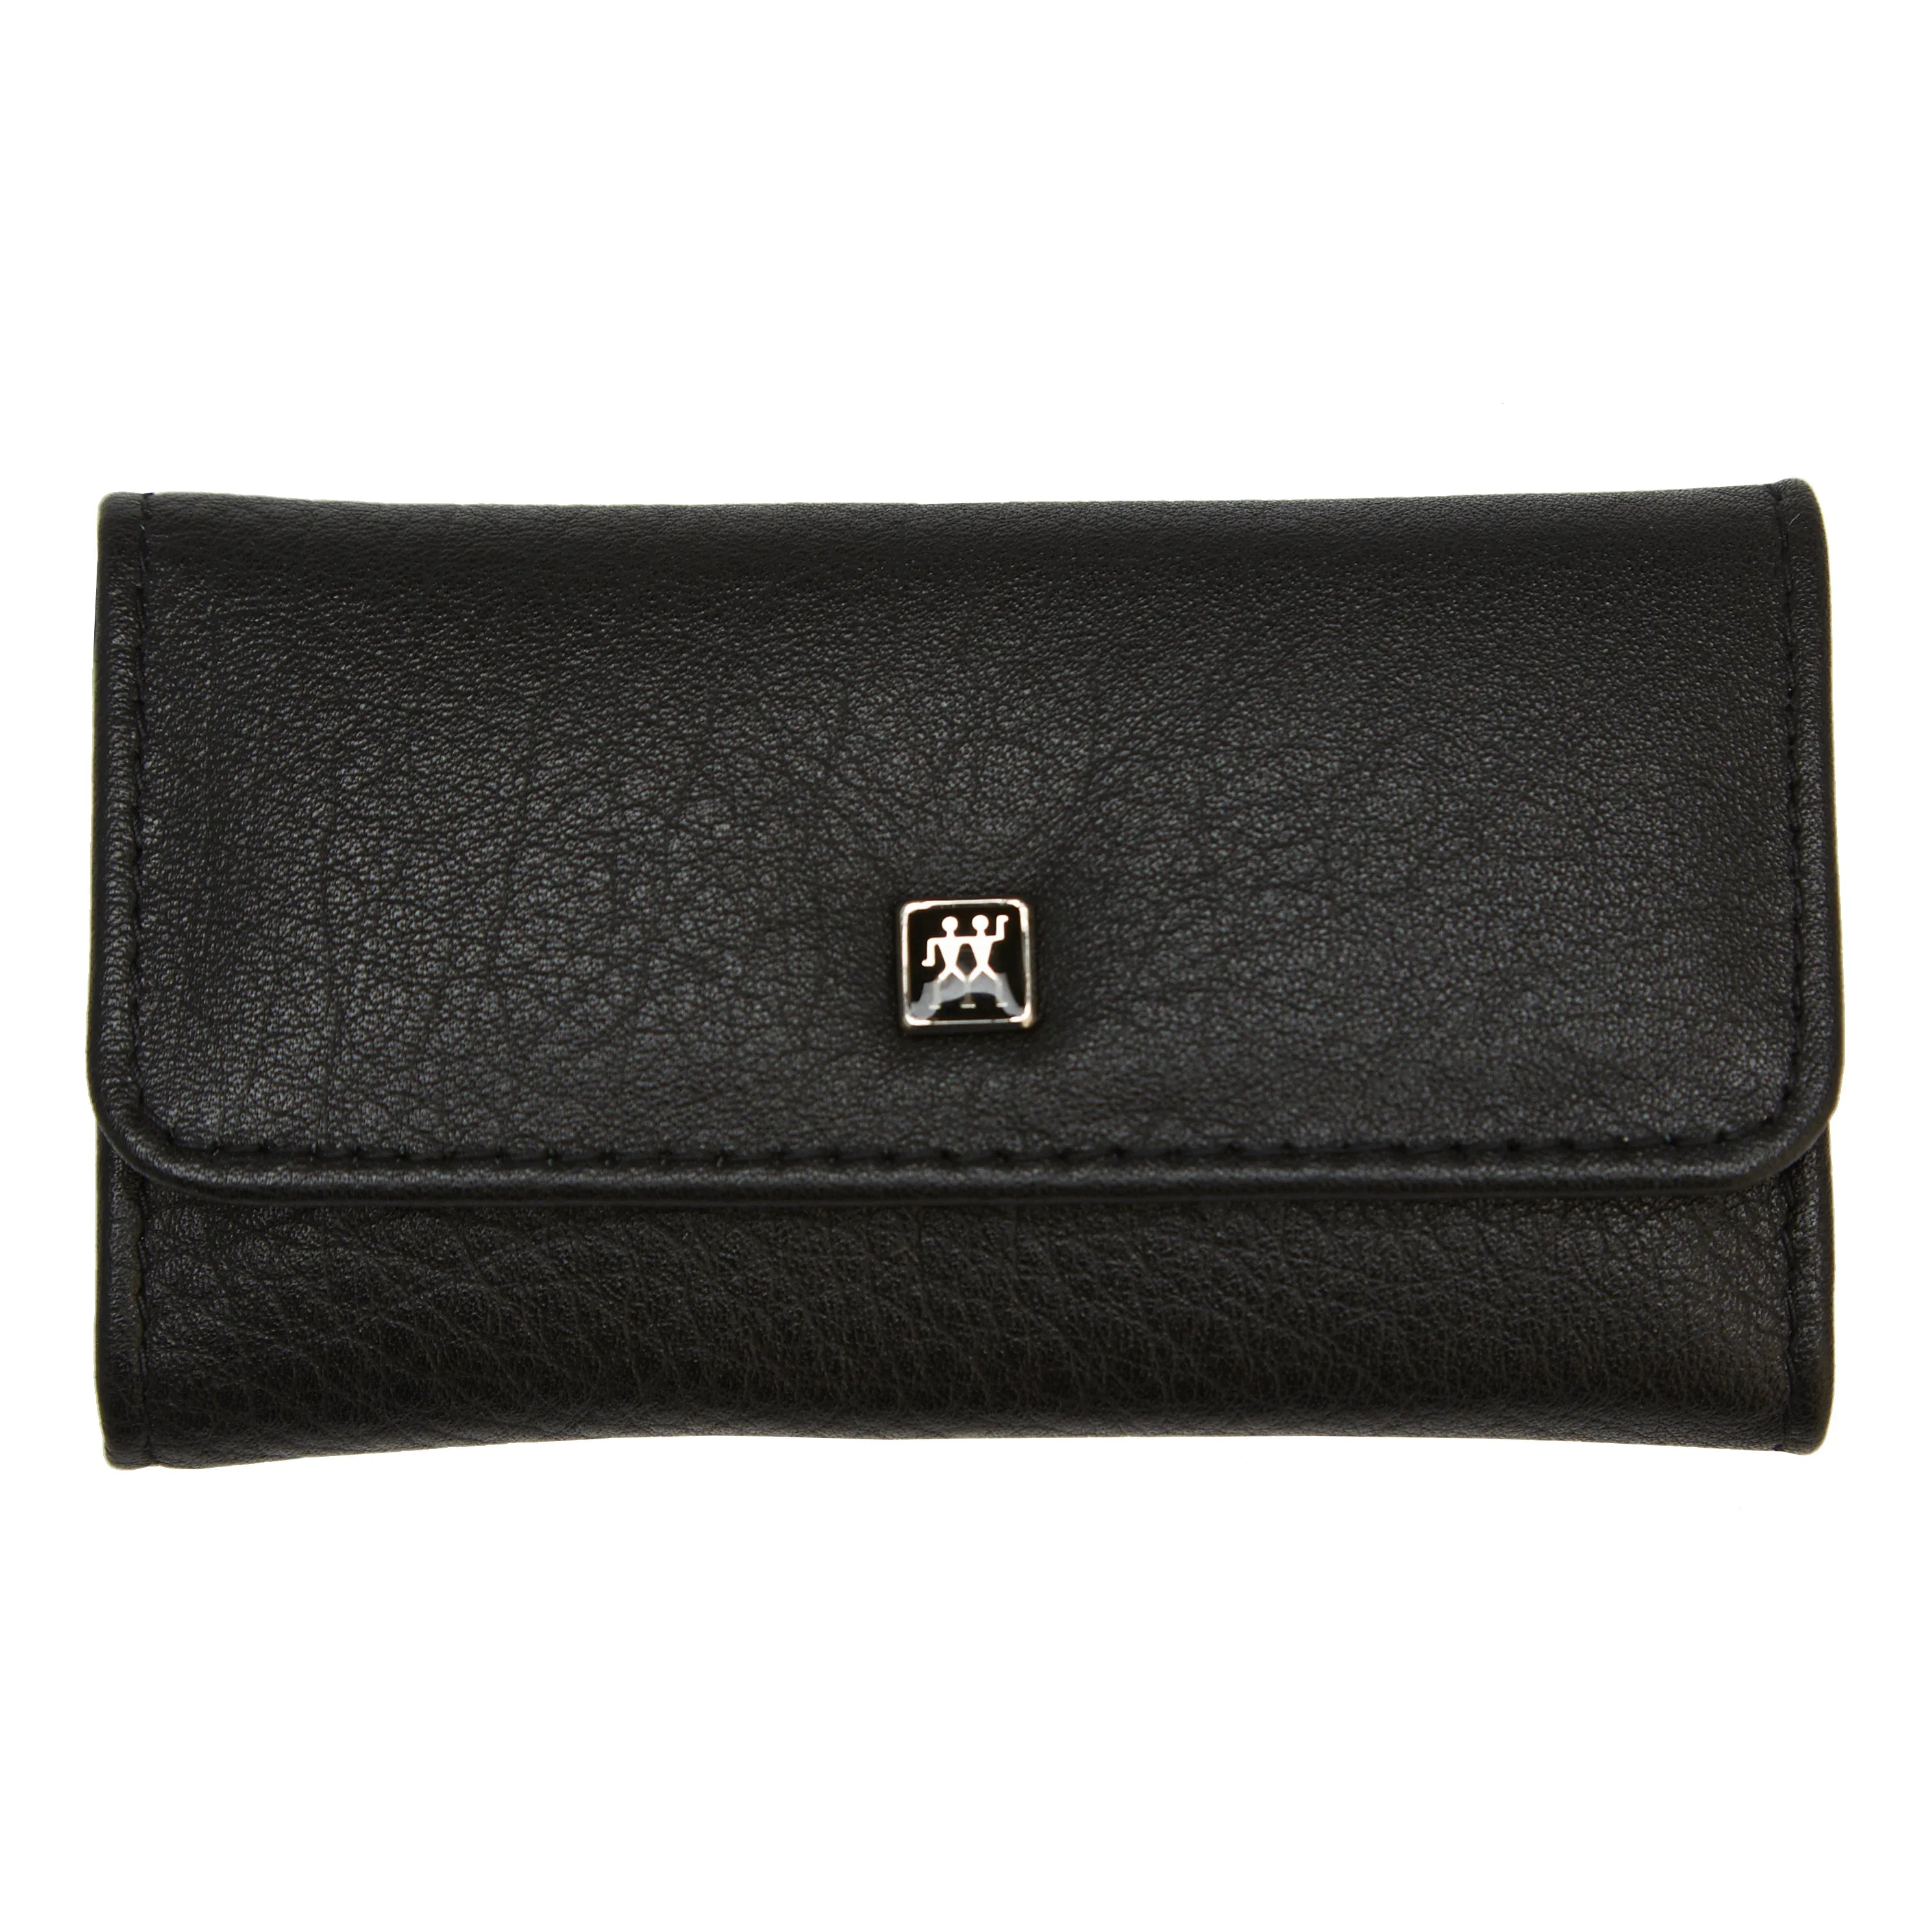 Zwilling Classic Inox pocket pouch 3-piece 10 cm - black